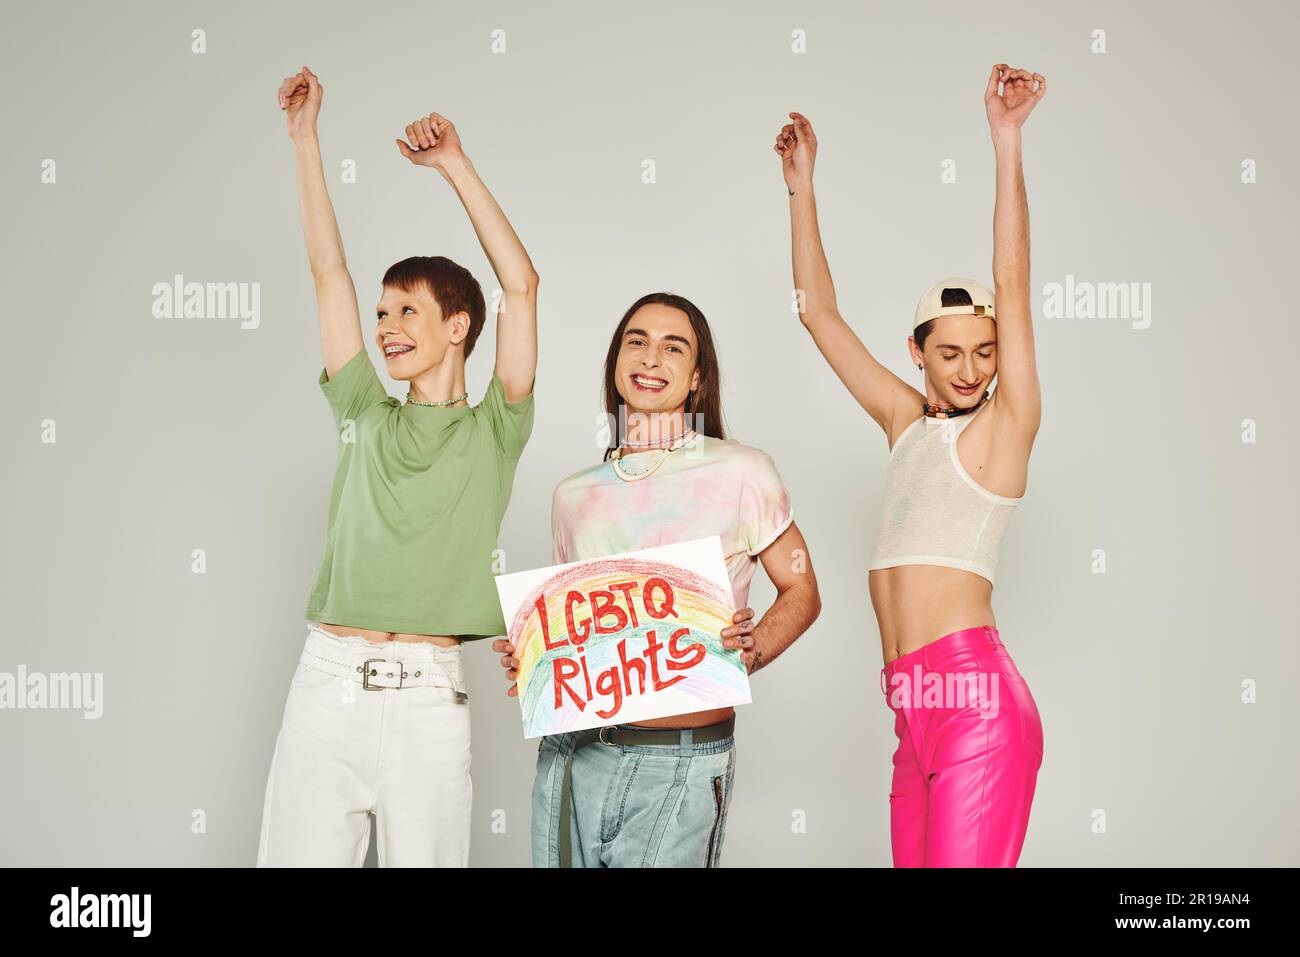 Fröhliche lgbt-Freunde in farbenfrohen Kleidern, die mit erhobenen Händen neben einem Plakat mit lgbtq-Rechten und einem Lächeln auf dem Stolz mon tanzen Stockfoto